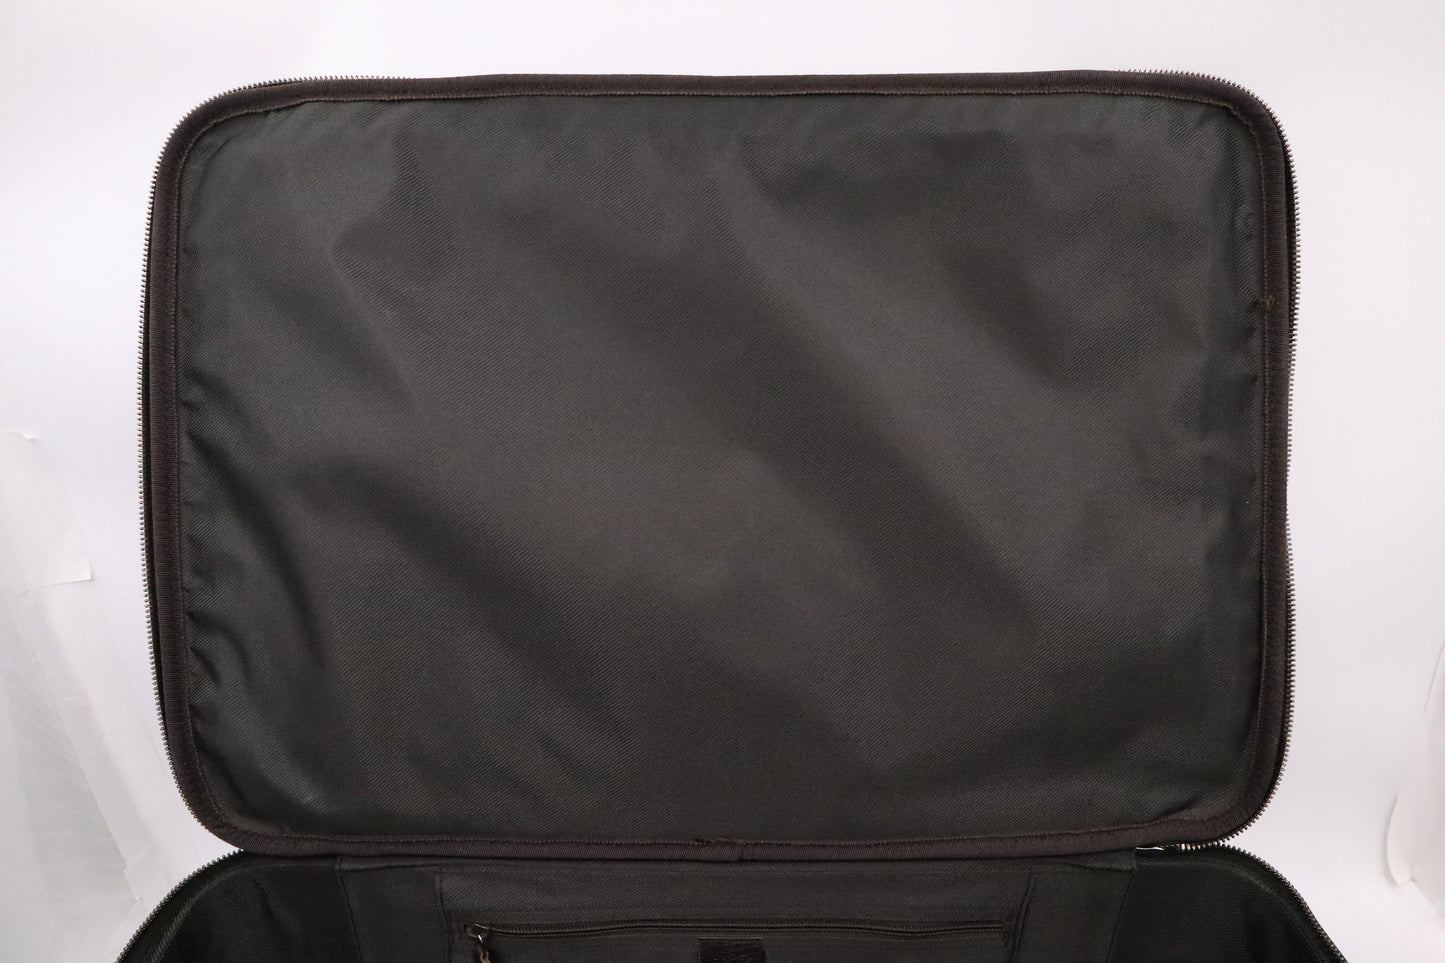 Gucci Suitcase in GG Supreme Canvas